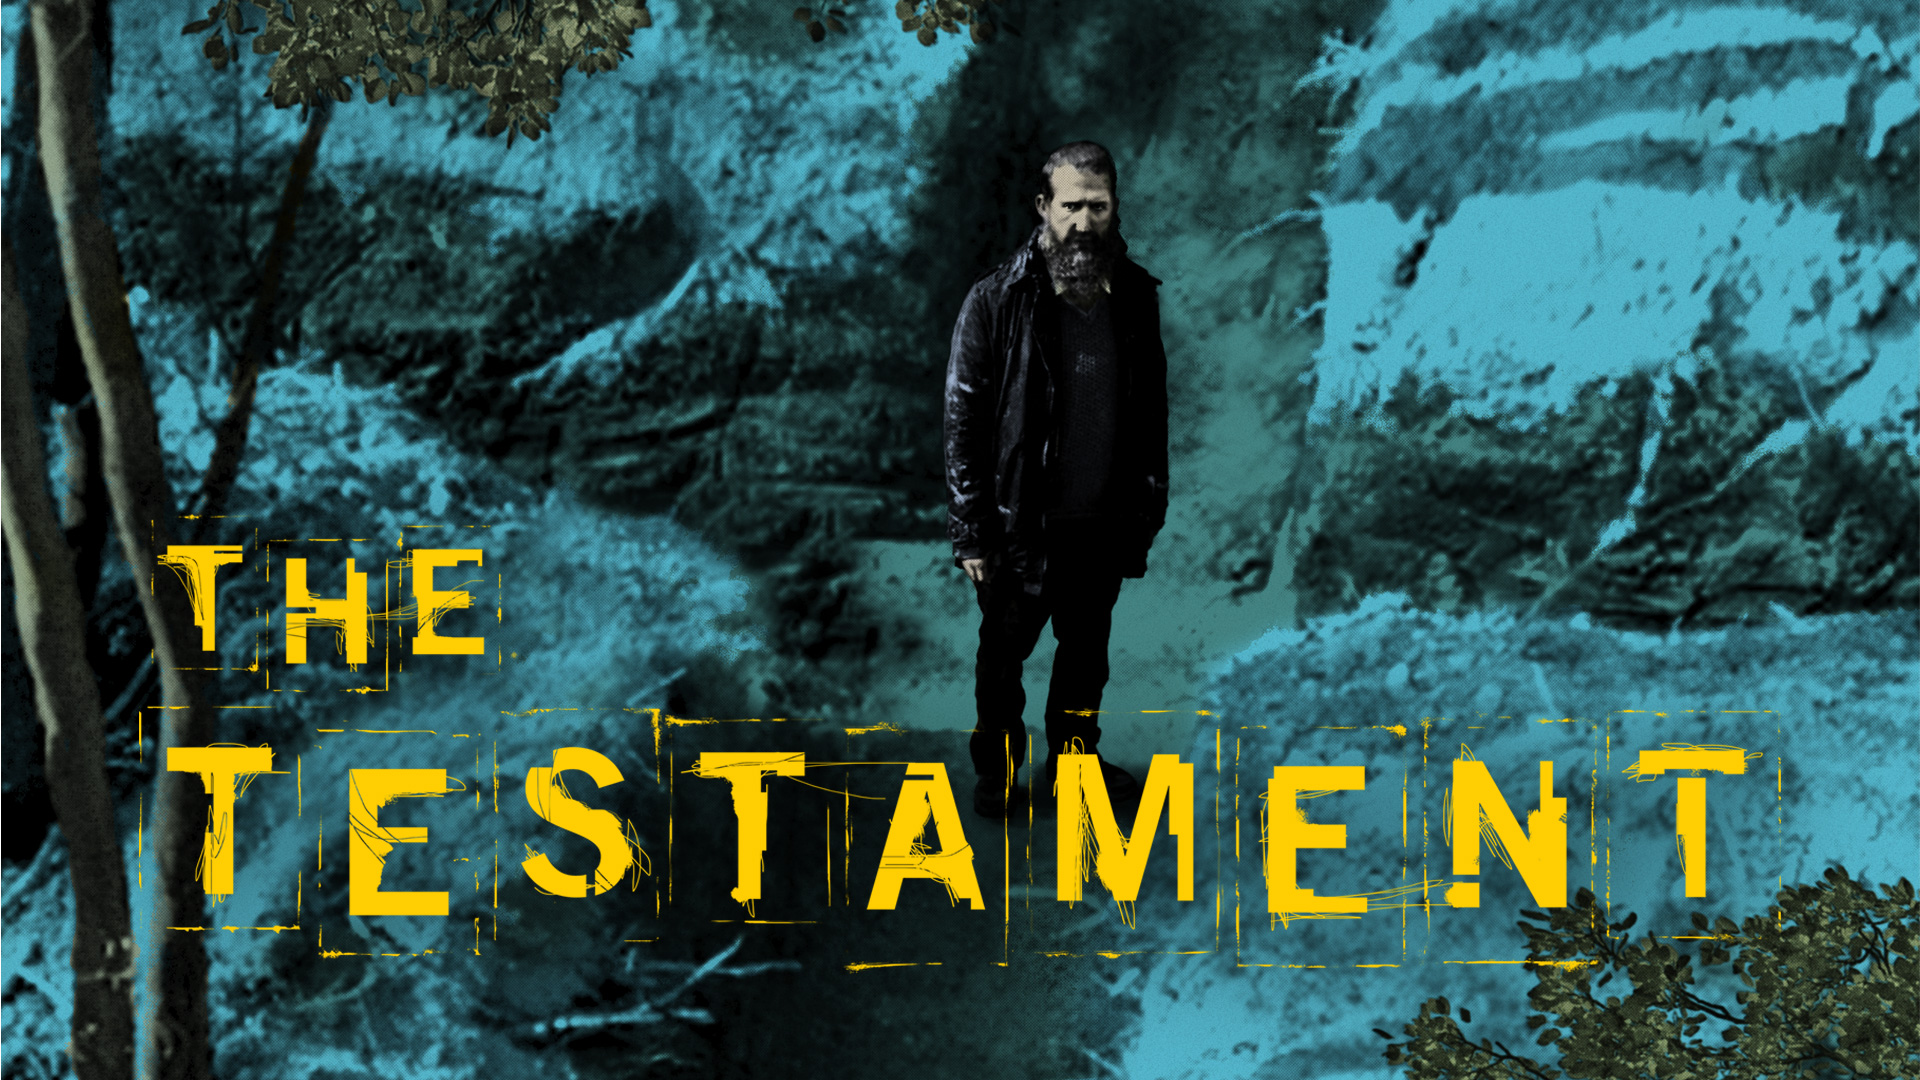 the testaments movie online